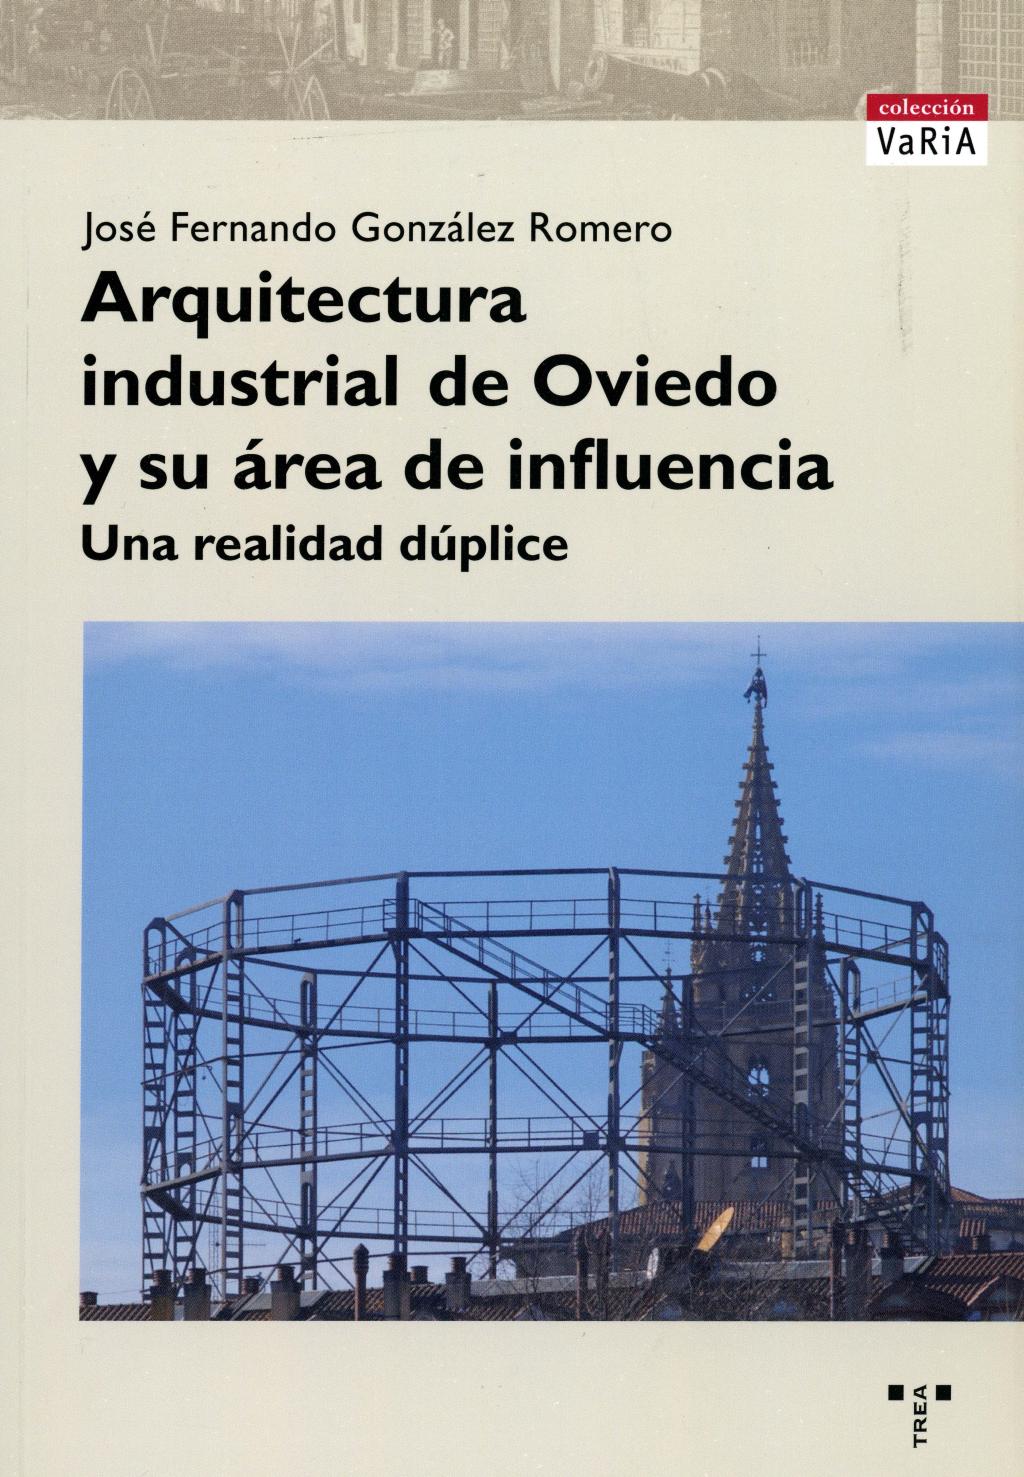 Colaboraciones Arquitectura industrial de Oviedo y su áreai de influencia Archivo Histórico Hunosa Pozo Fondón